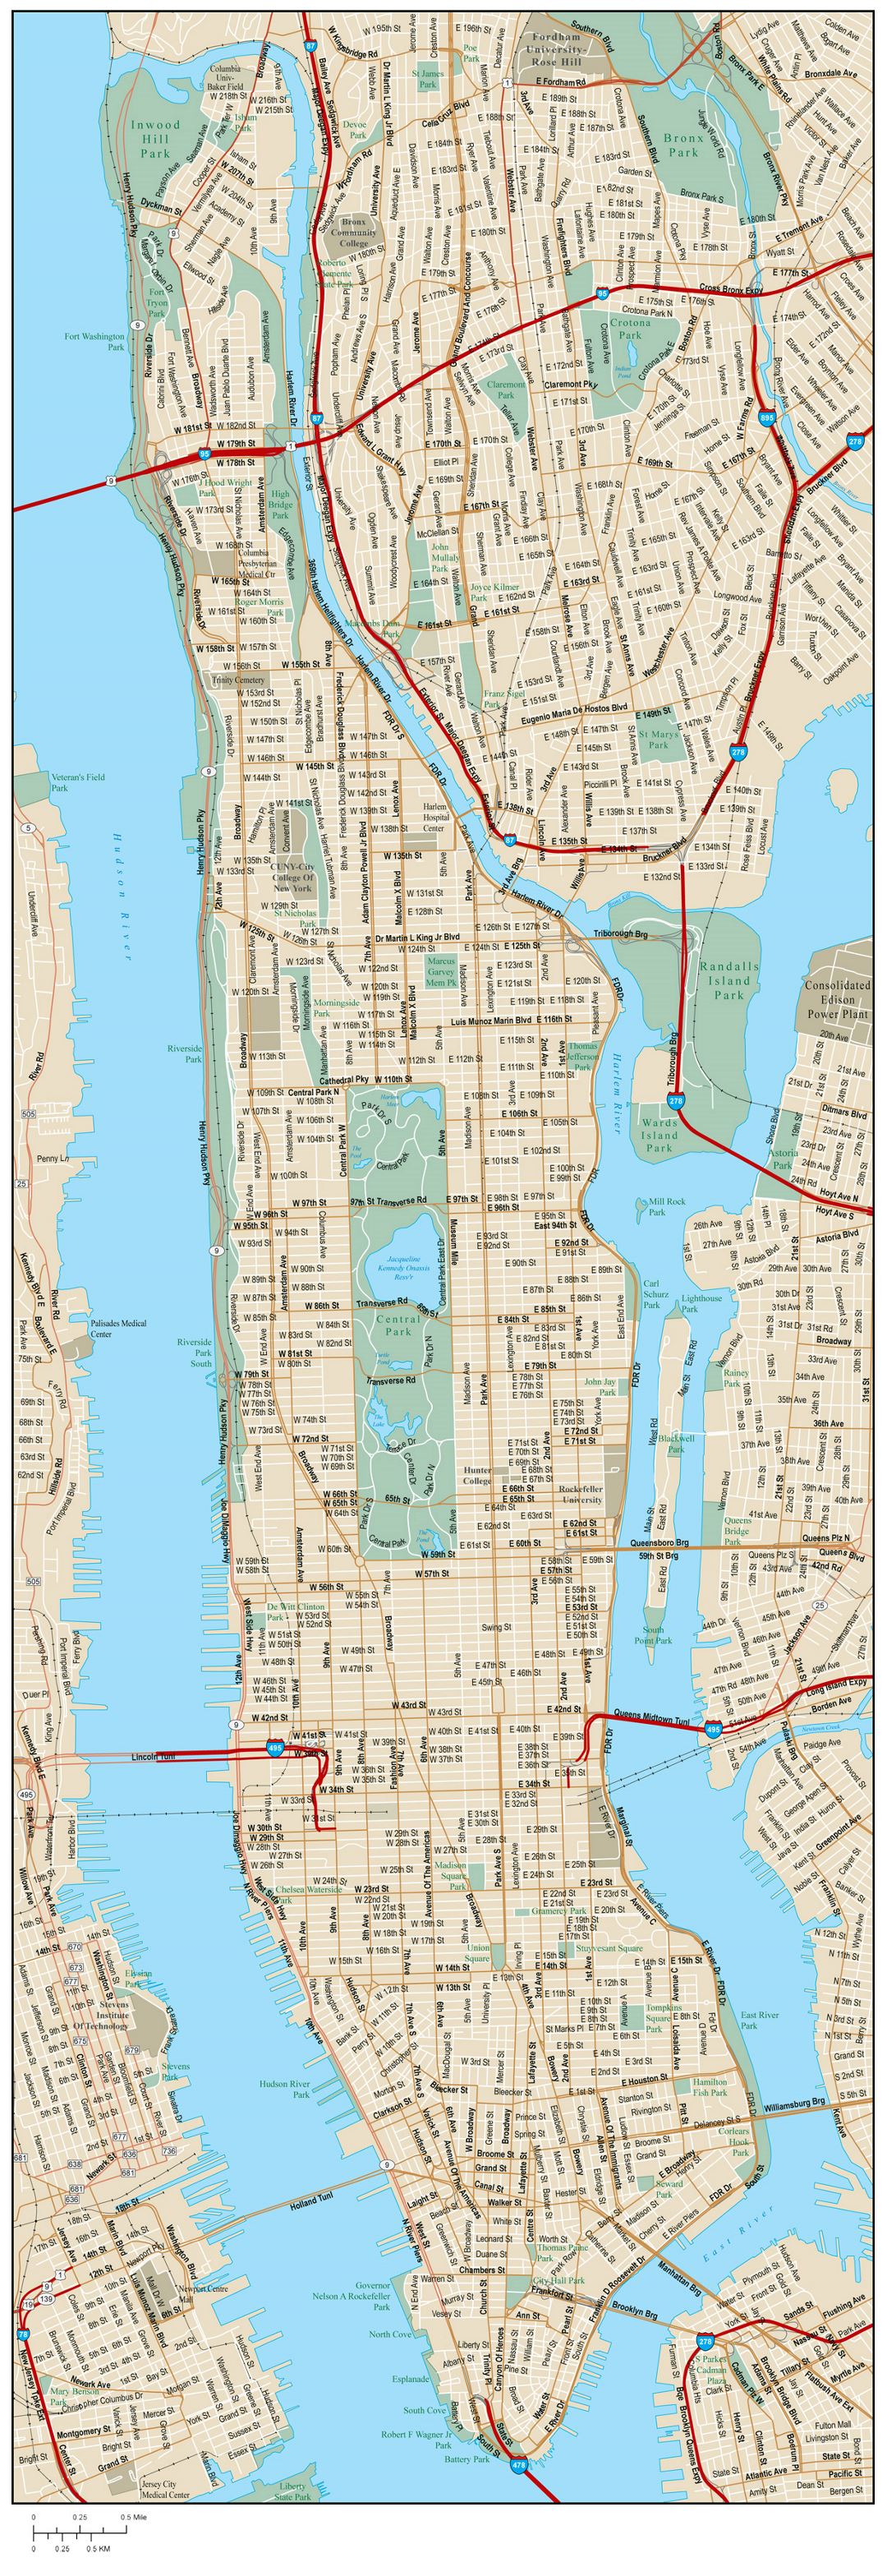 Большая карта дорог Манхэттена с названиями улиц